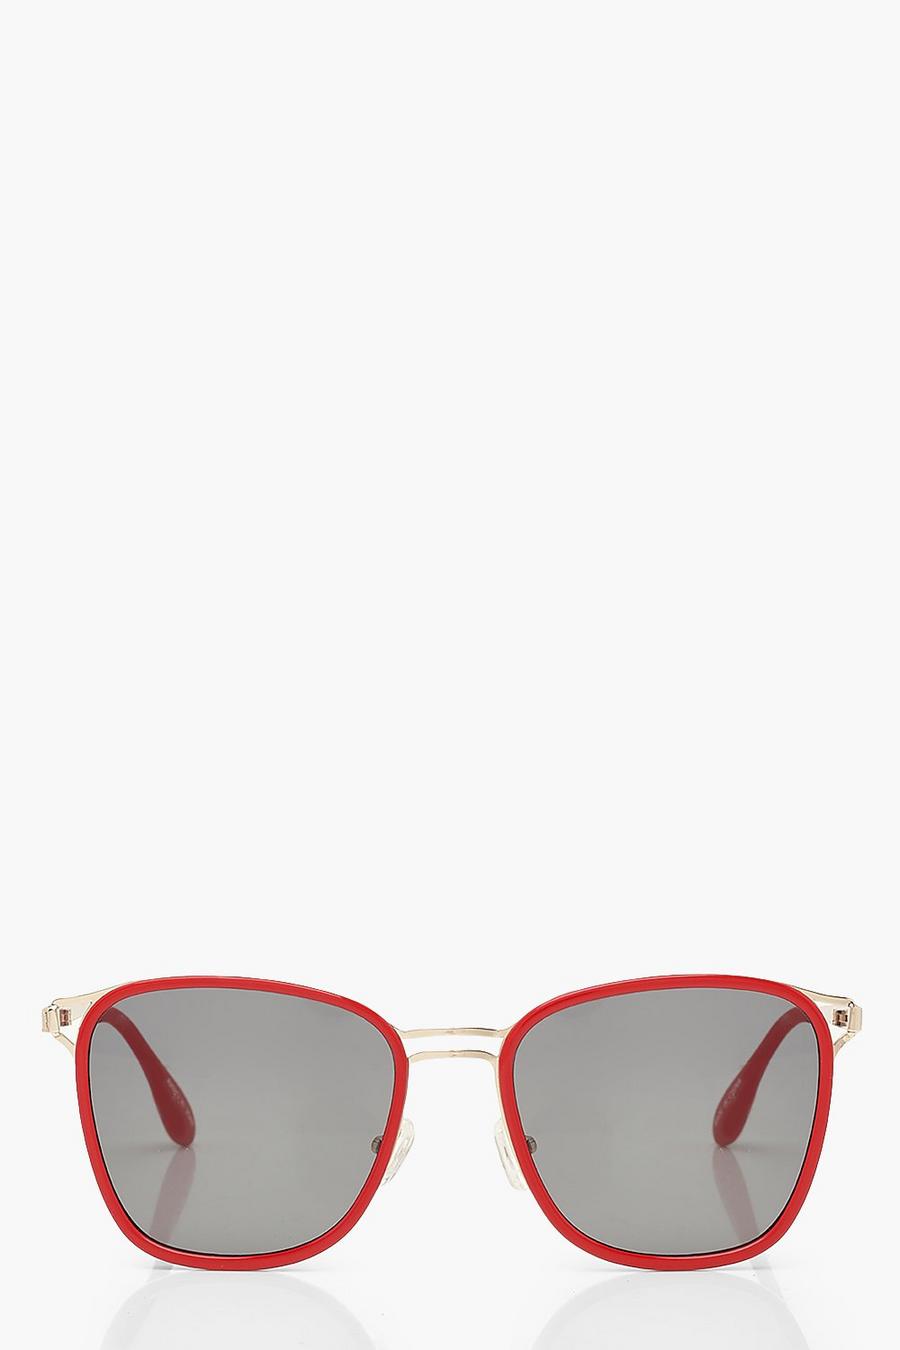 Gafas de sol extragrandes con montura roja image number 1